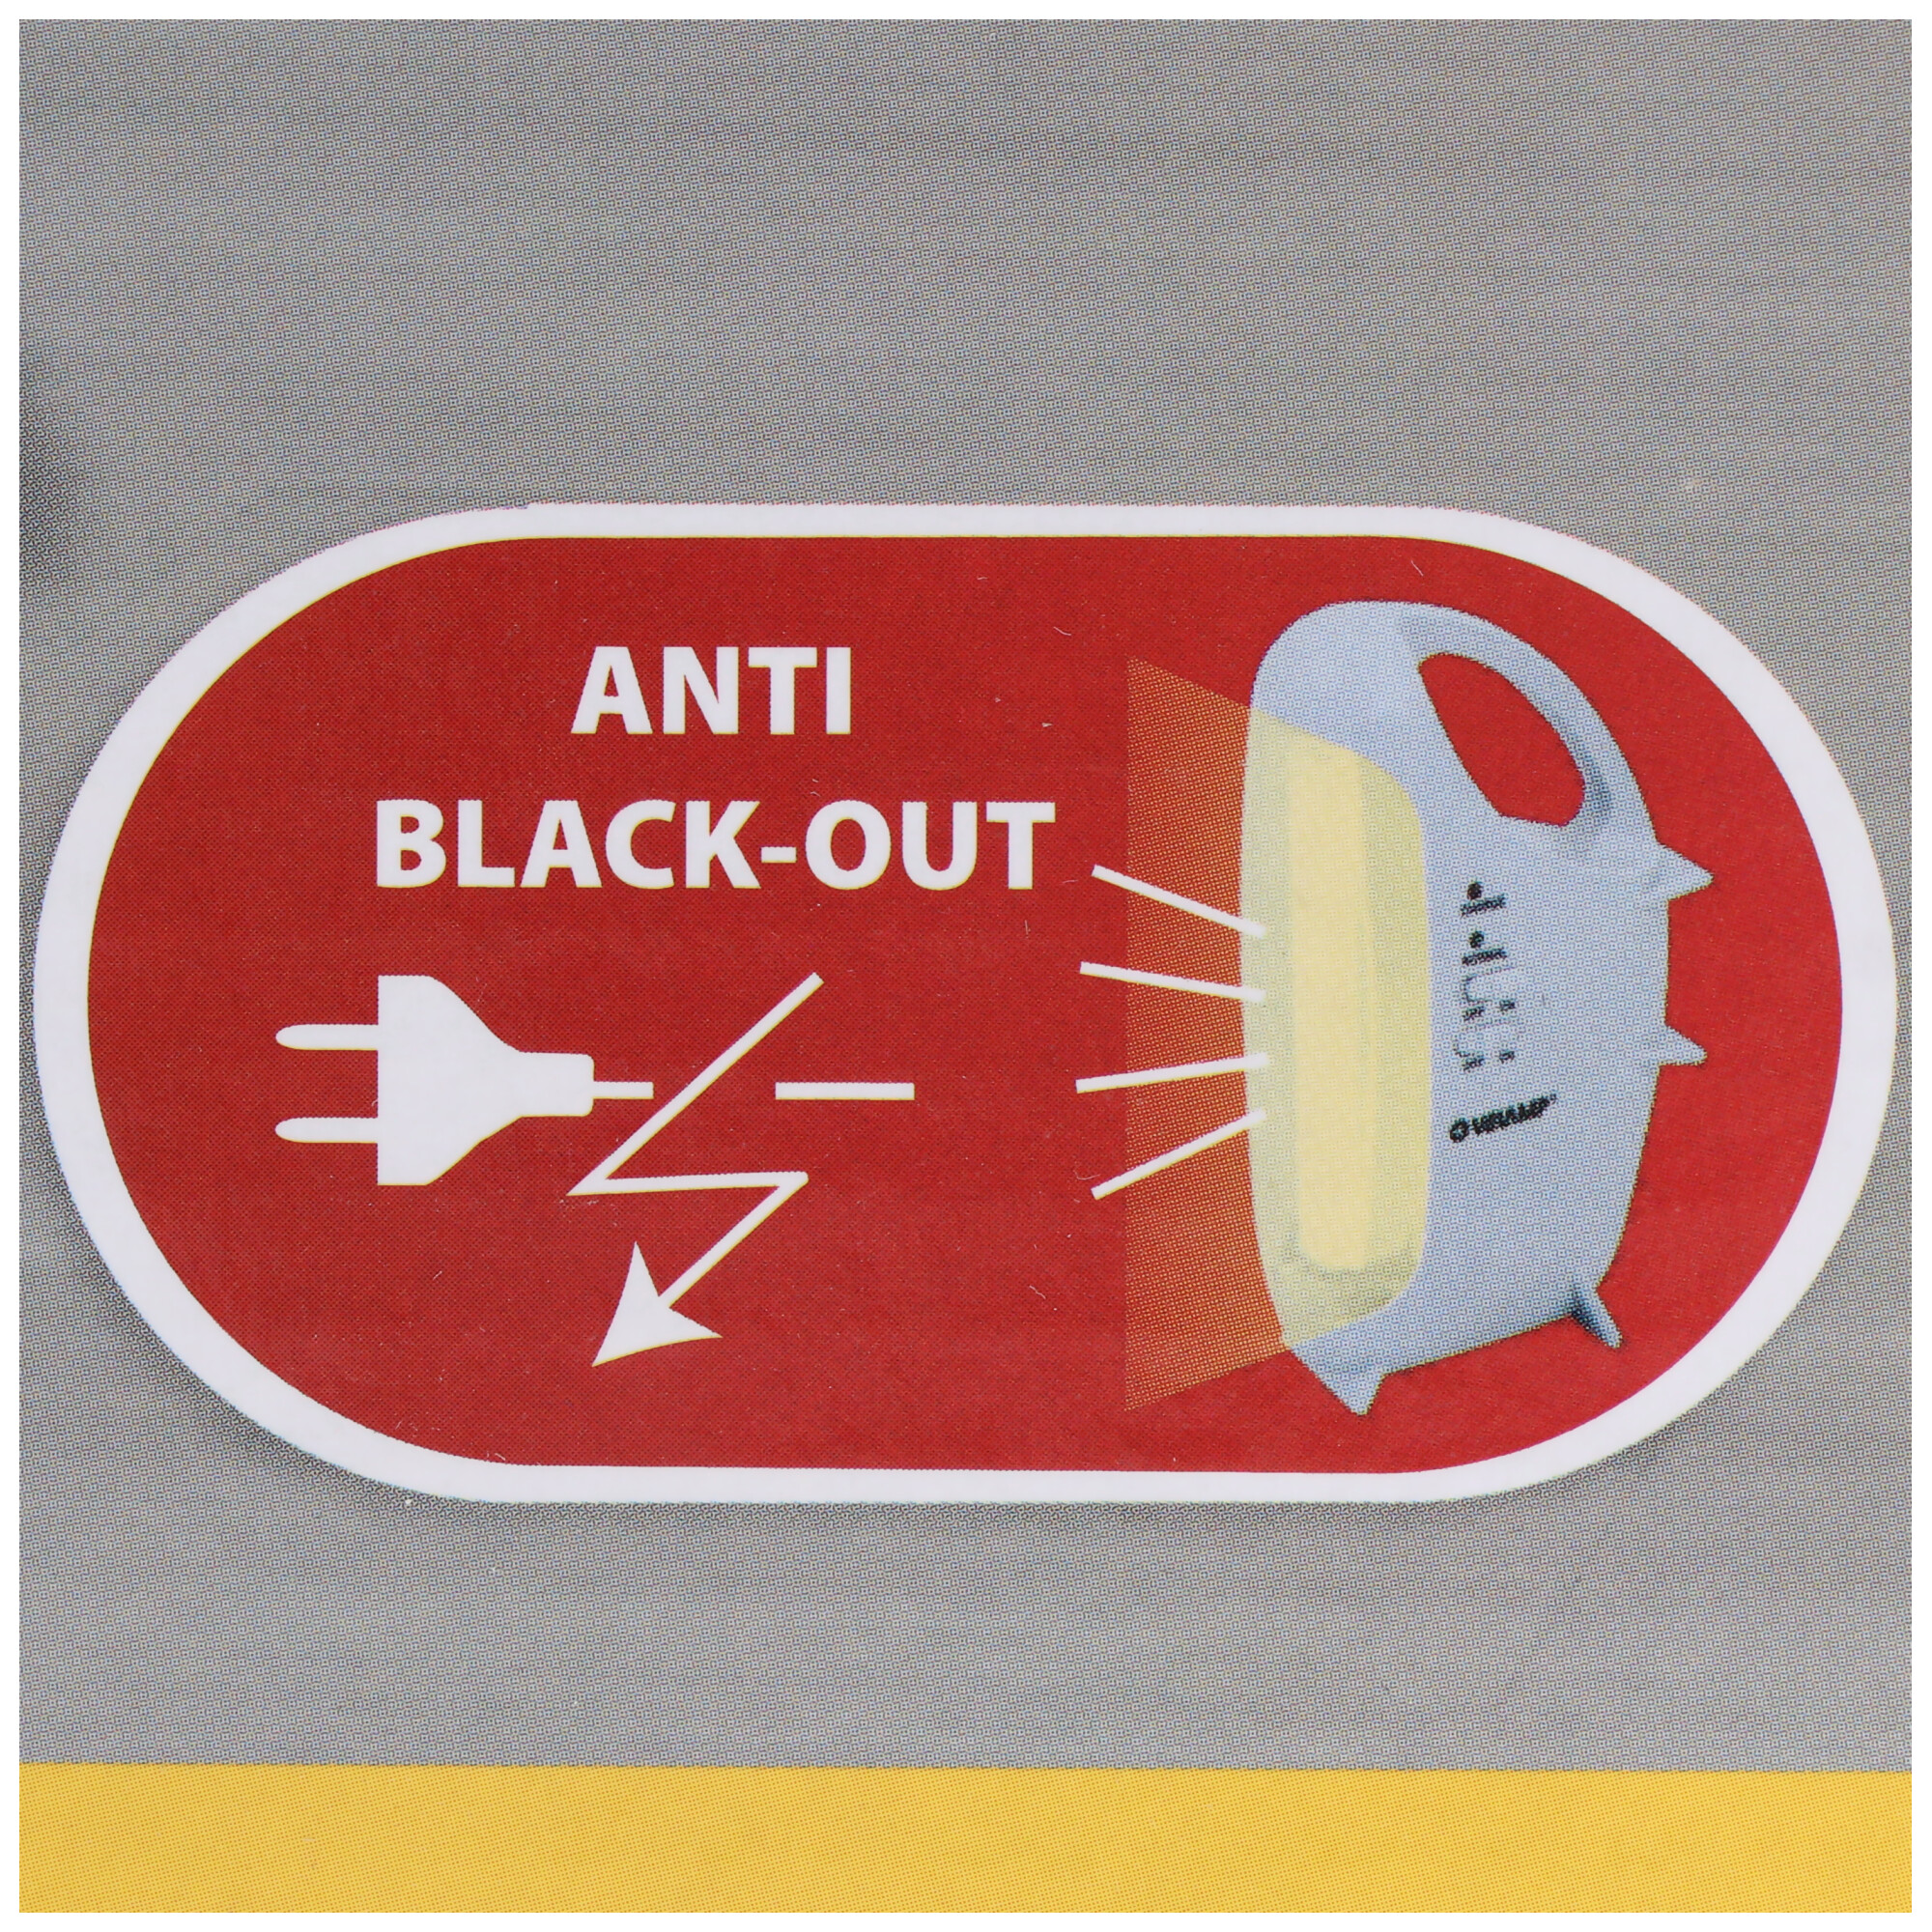 Akku-Leuchte mit Anti Black-Out Funktion, tragbare wiederaufladbare LED-Notleuchte, 320 Lumen, mit Transformator